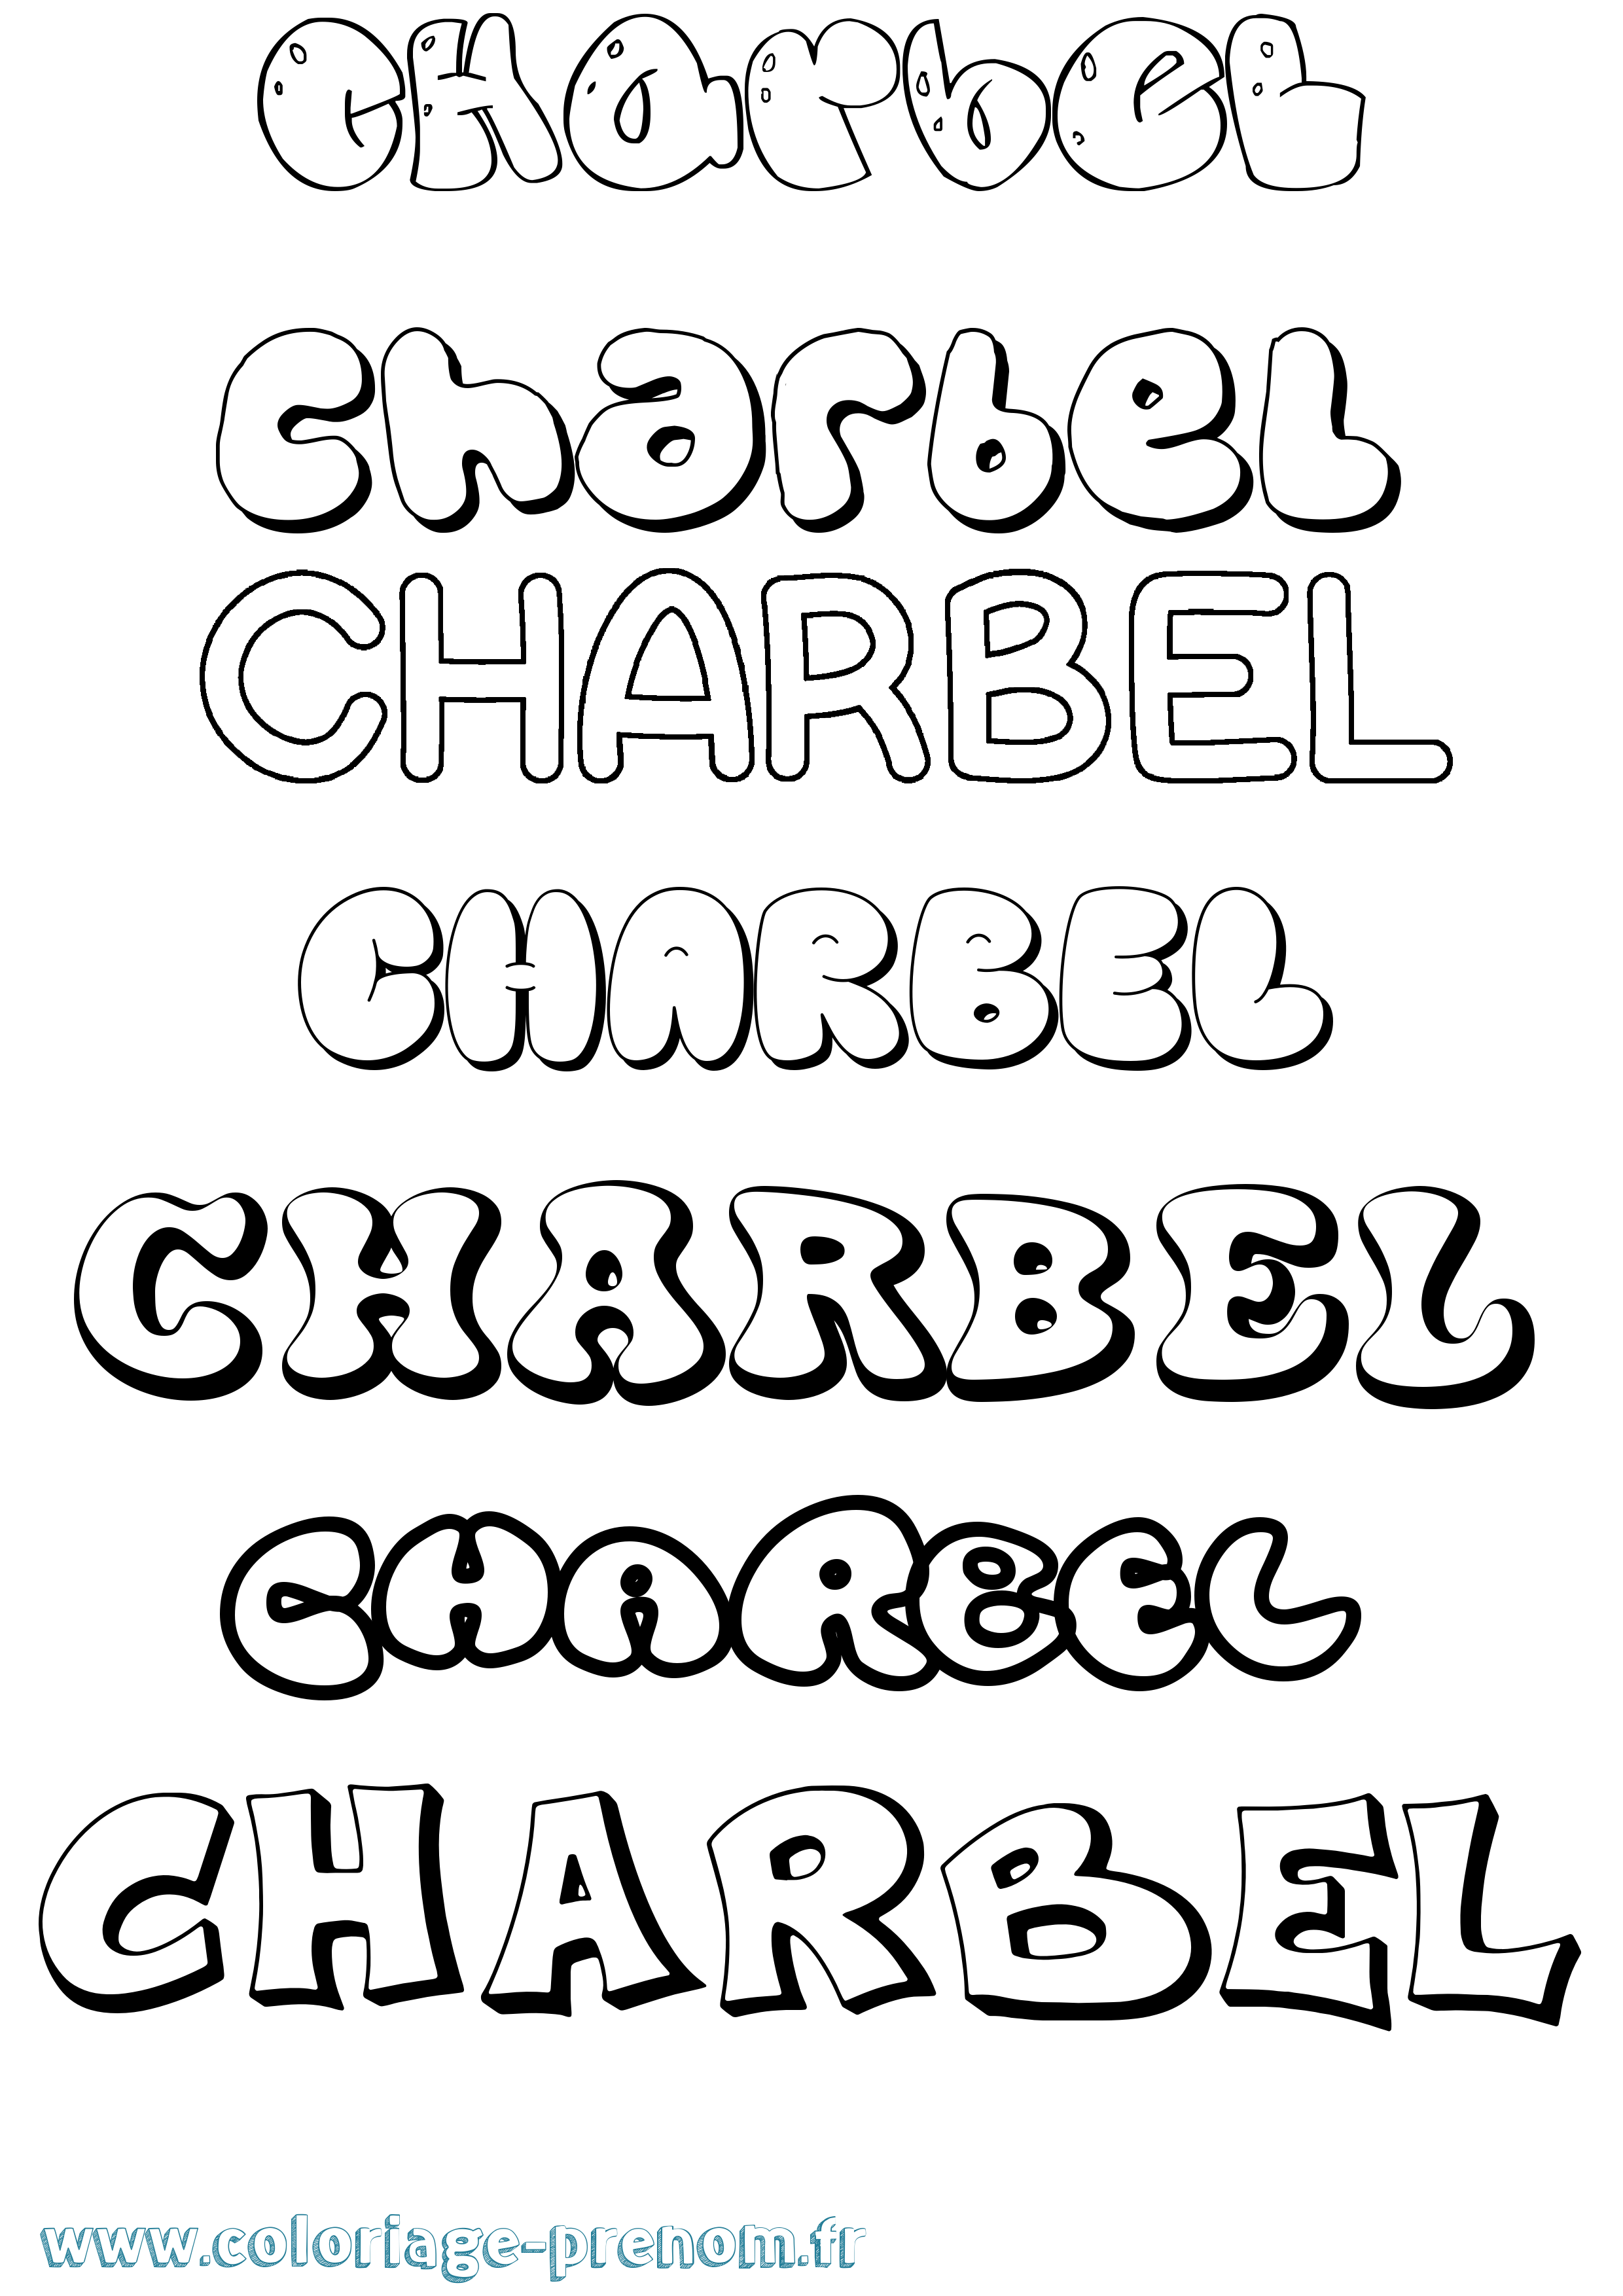 Coloriage prénom Charbel Bubble